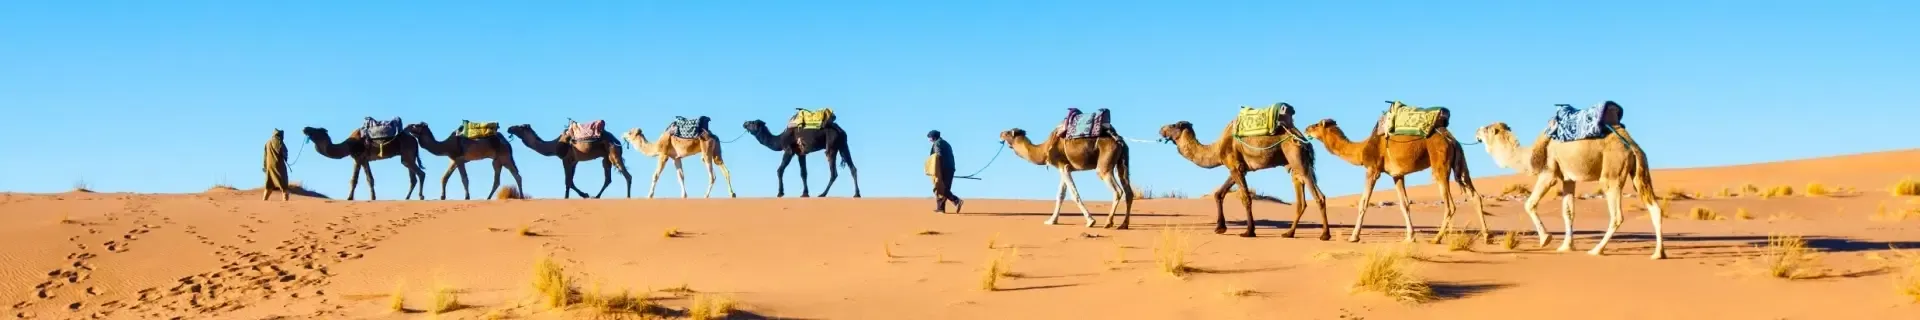 Marokko kamelen